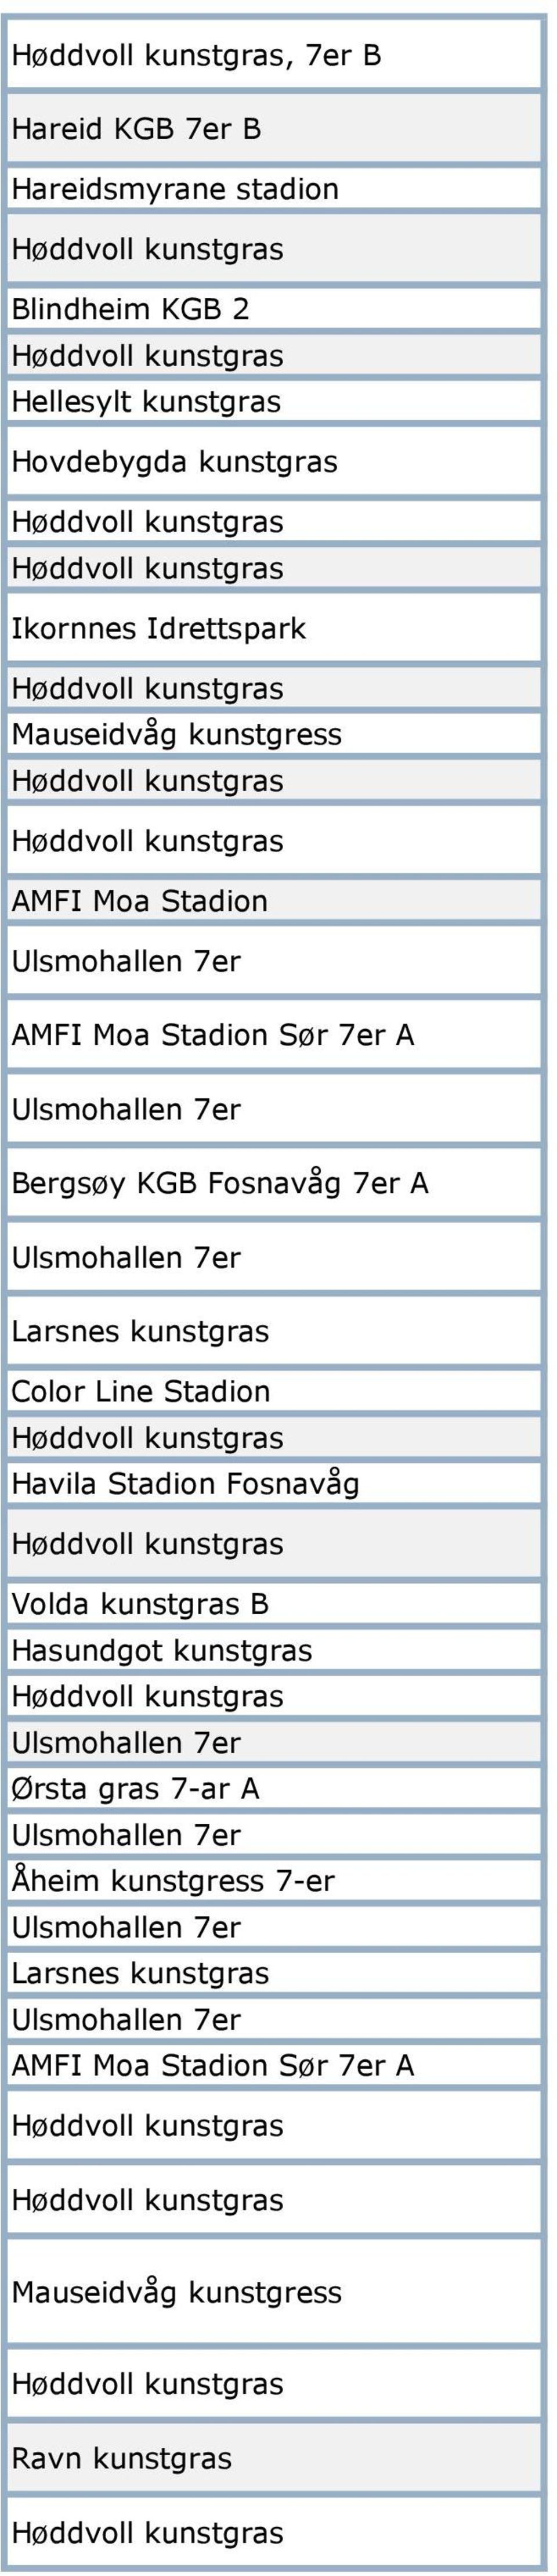 7er A Larsnes kunstgras Color Line Stadion Havila Stadion Fosnavåg Volda kunstgras B Hasundgot kunstgras